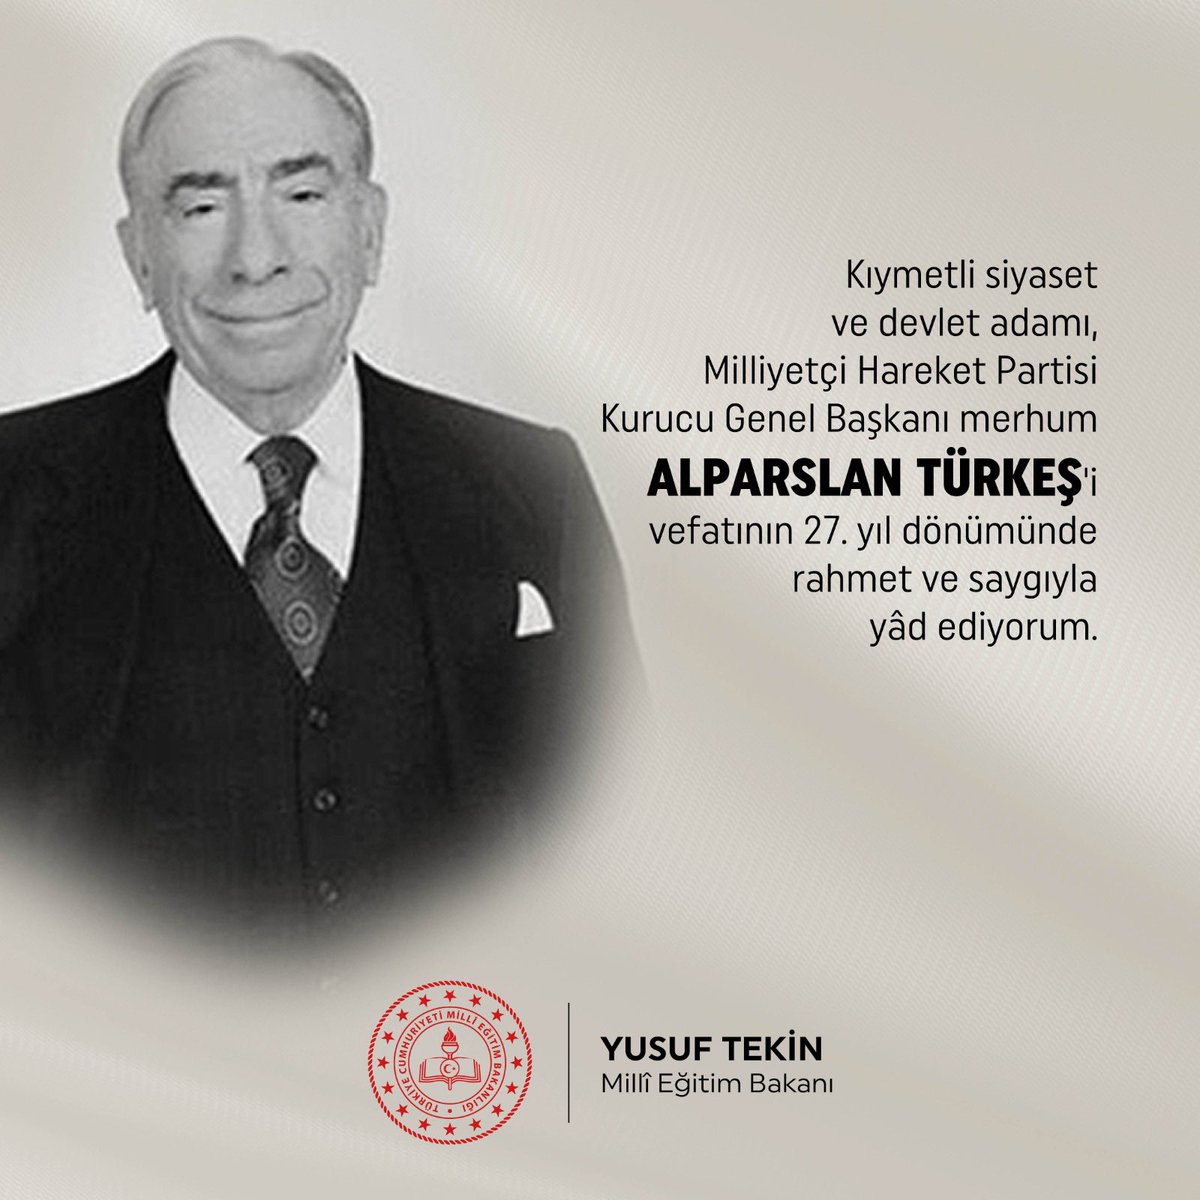 Kıymetli siyaset ve devlet adamı, Milliyetçi Hareket Partisi Kurucu Genel Başkanı merhum Alparslan Türkeş’i vefatının 27. yıl dönümünde rahmet ve saygıyla yâd ediyorum.